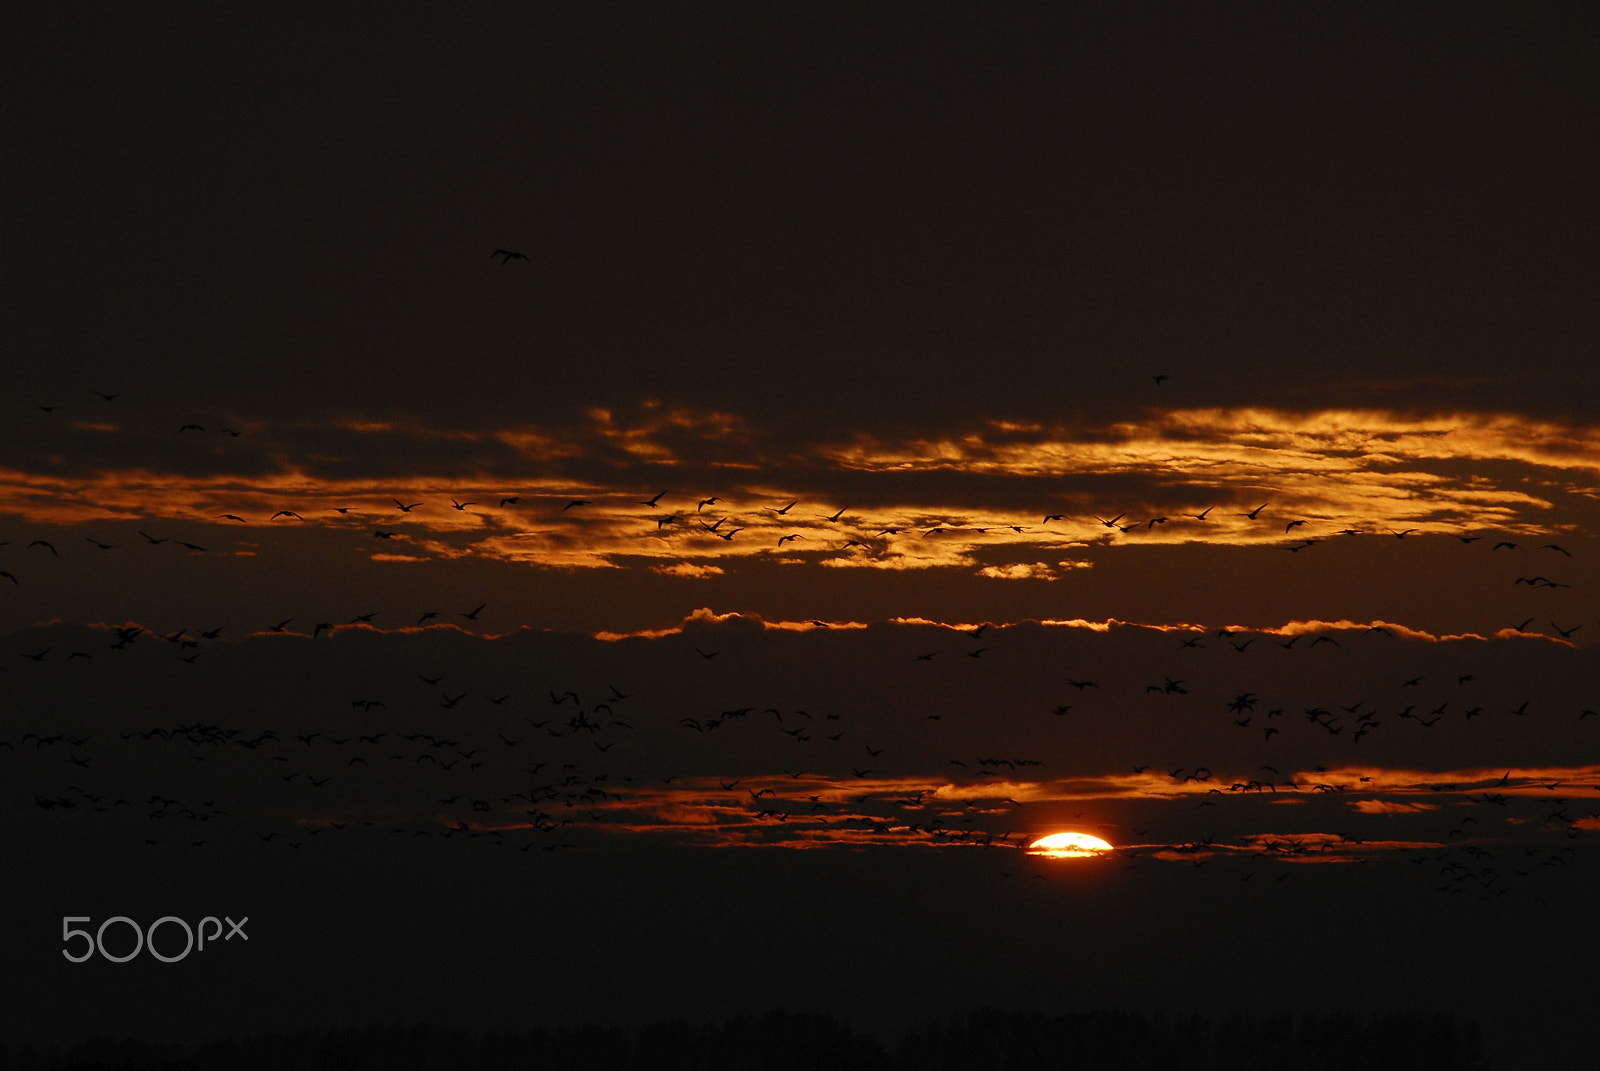 Nikon D200 sample photo. Crane - sunset photography